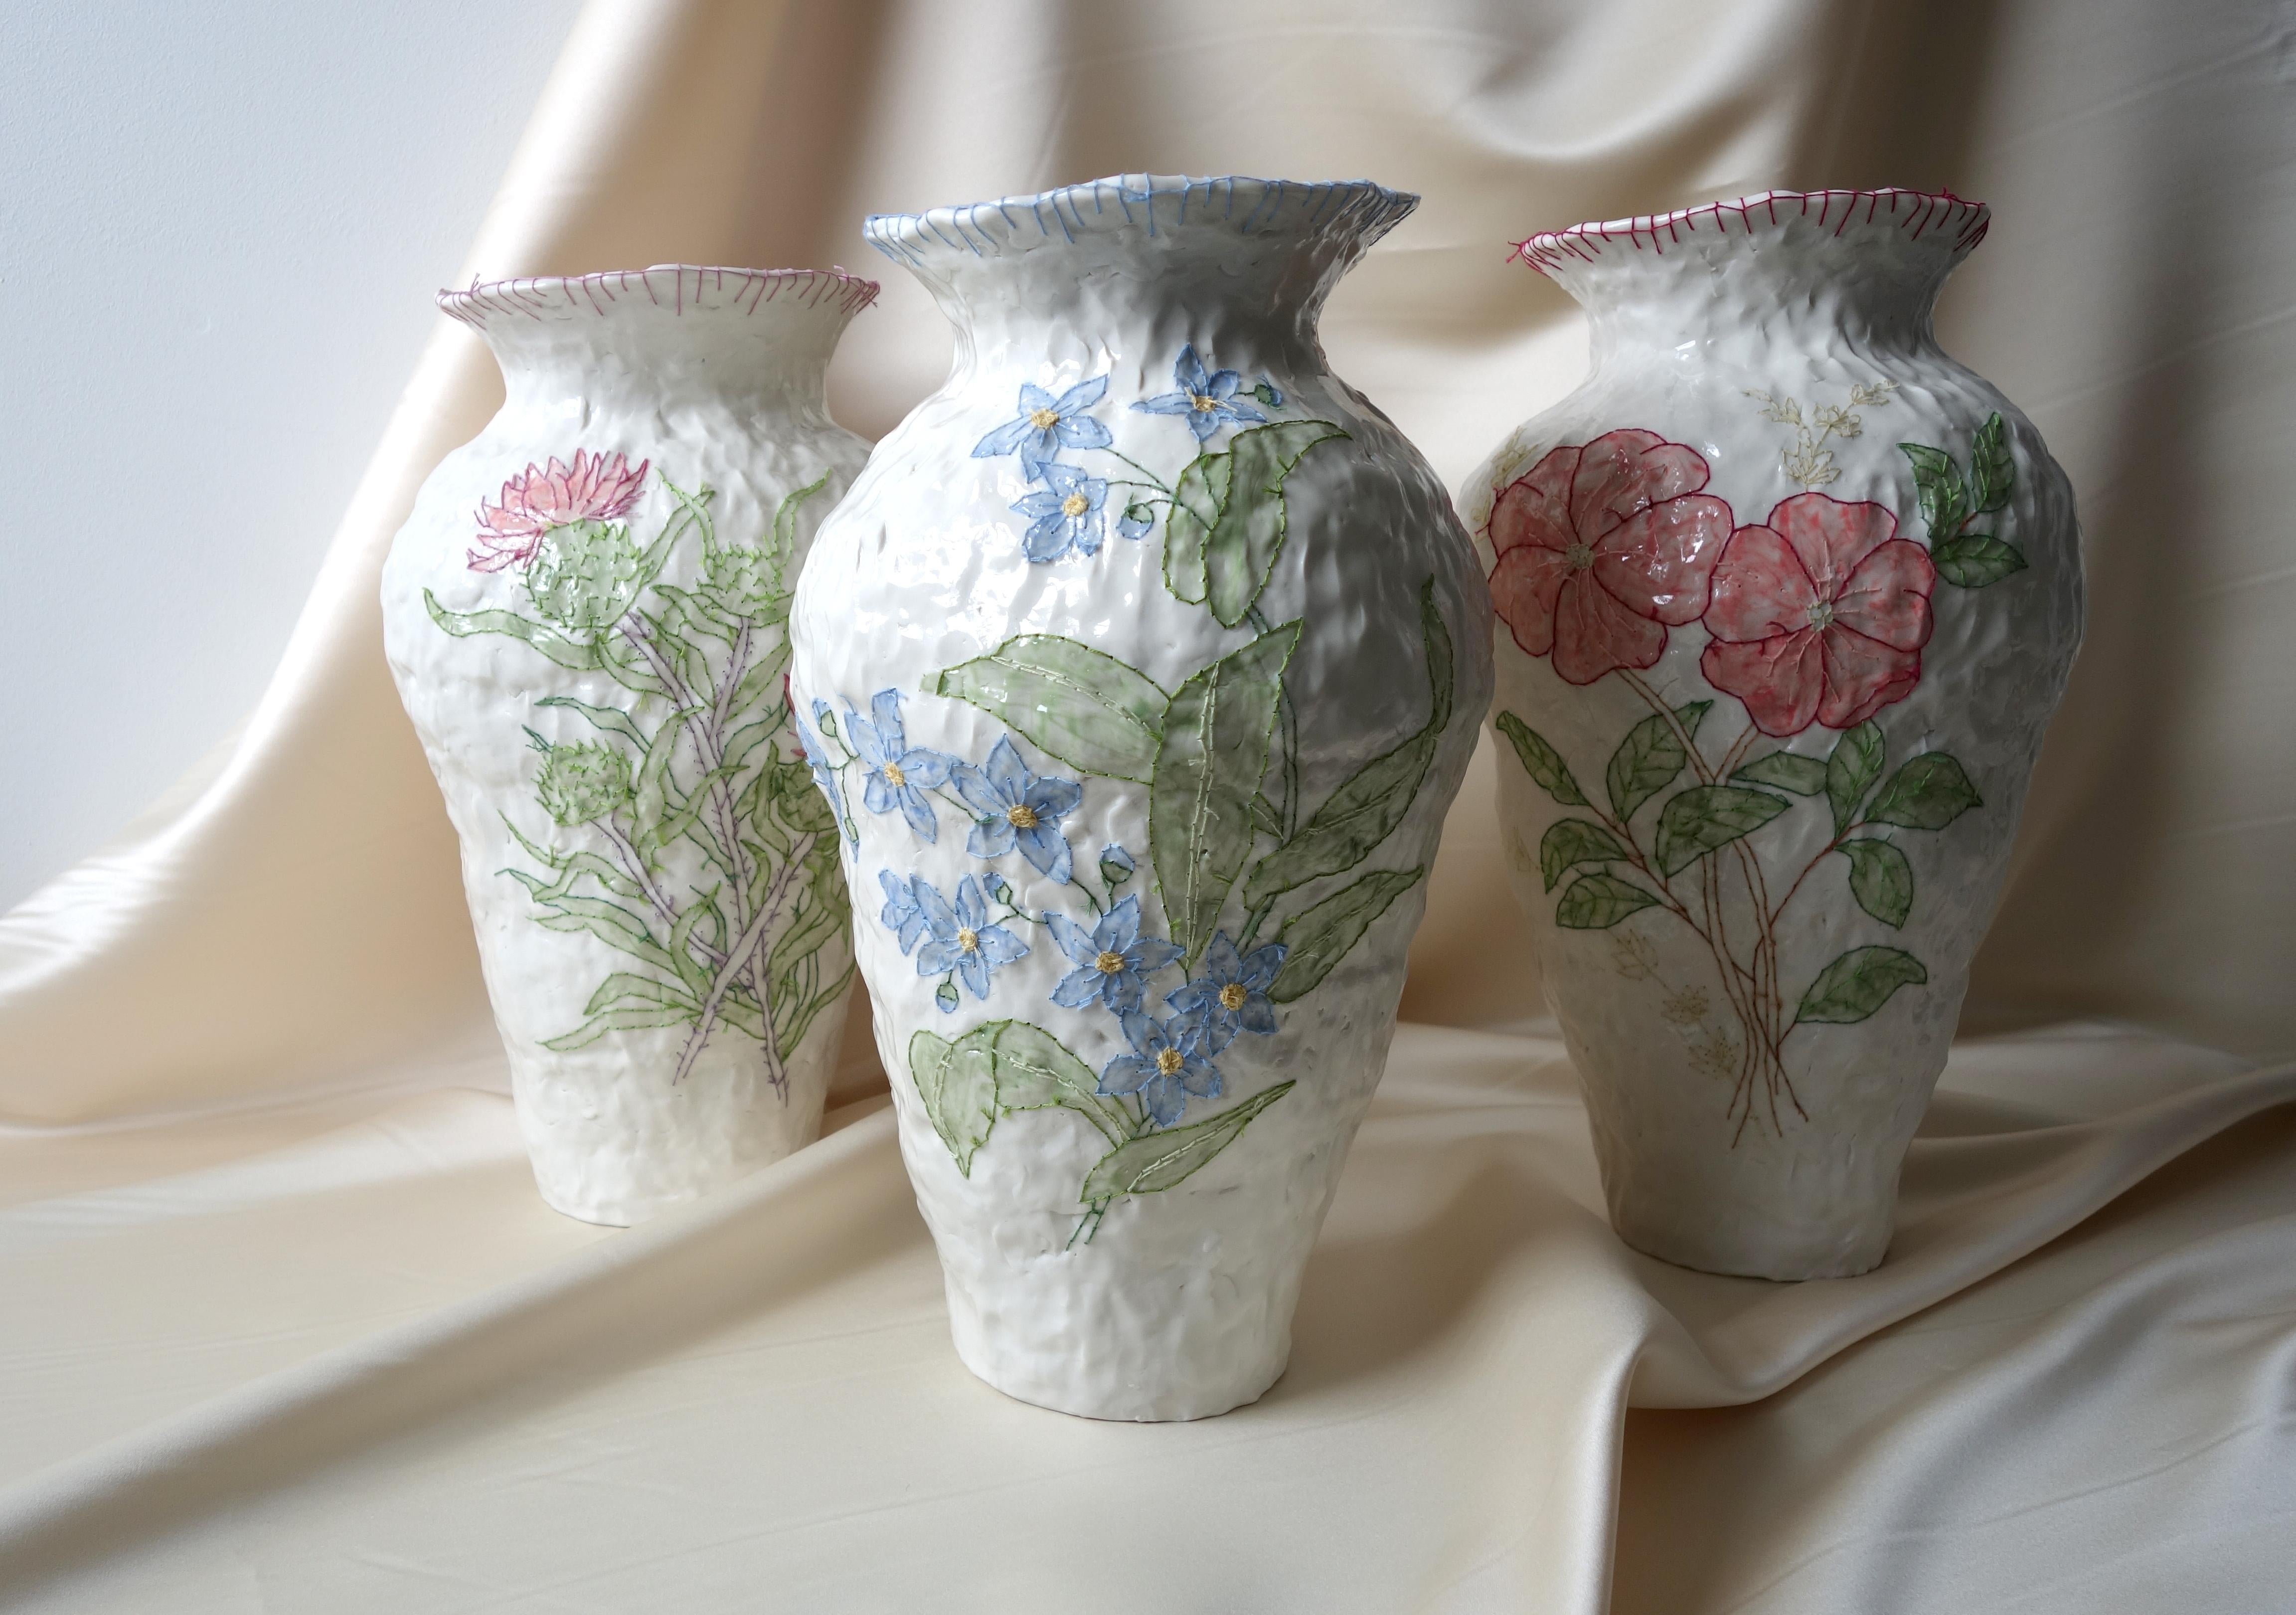 Contemporary Emboridery Vase by Caroline Harrius